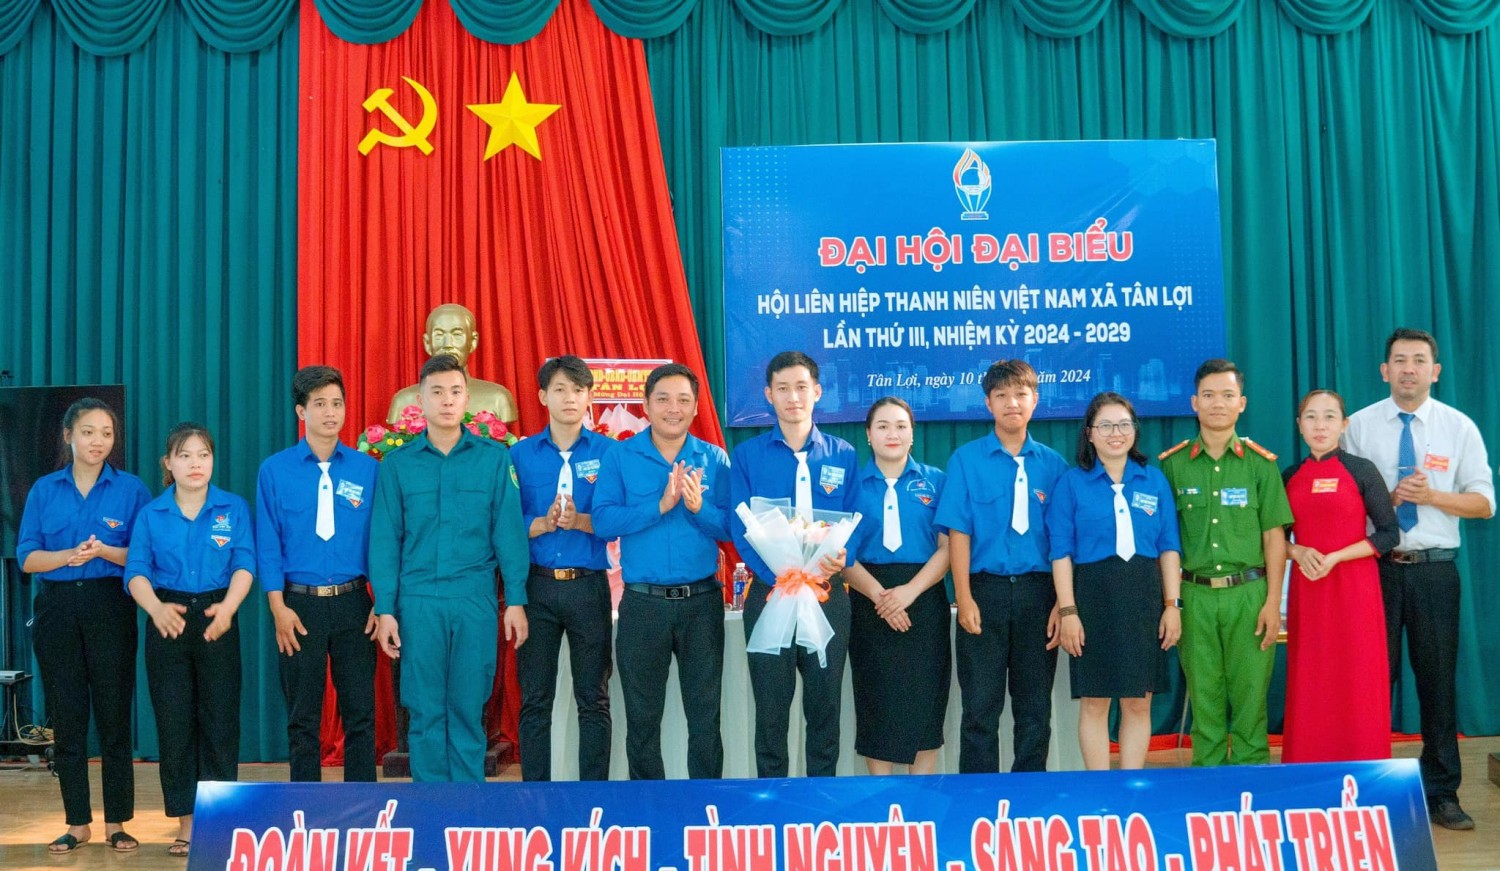 Đại hội Đại biểu Hội LHTN Việt Nam xã Tân Lợi